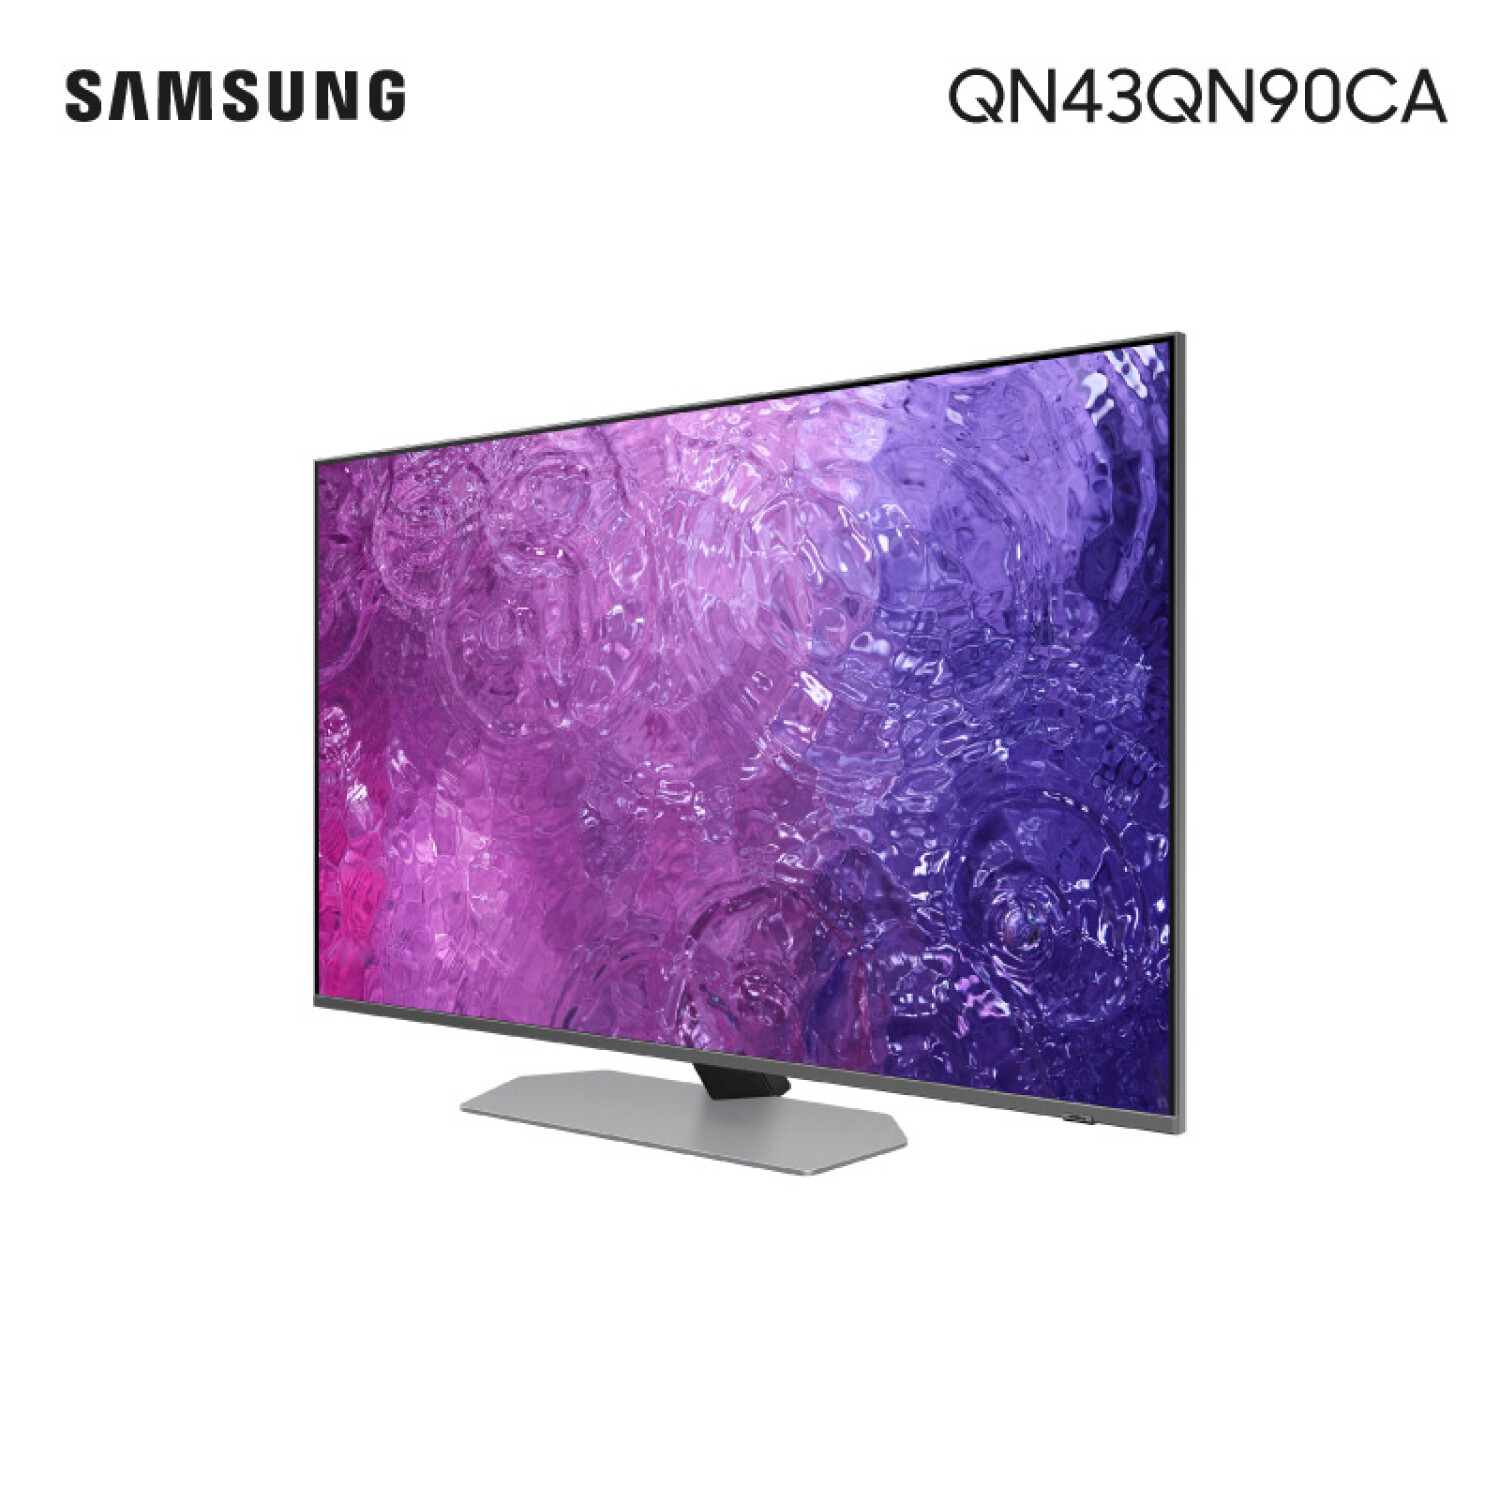 Smart TV Samsung 43 NEO QLED 4K — Nstore